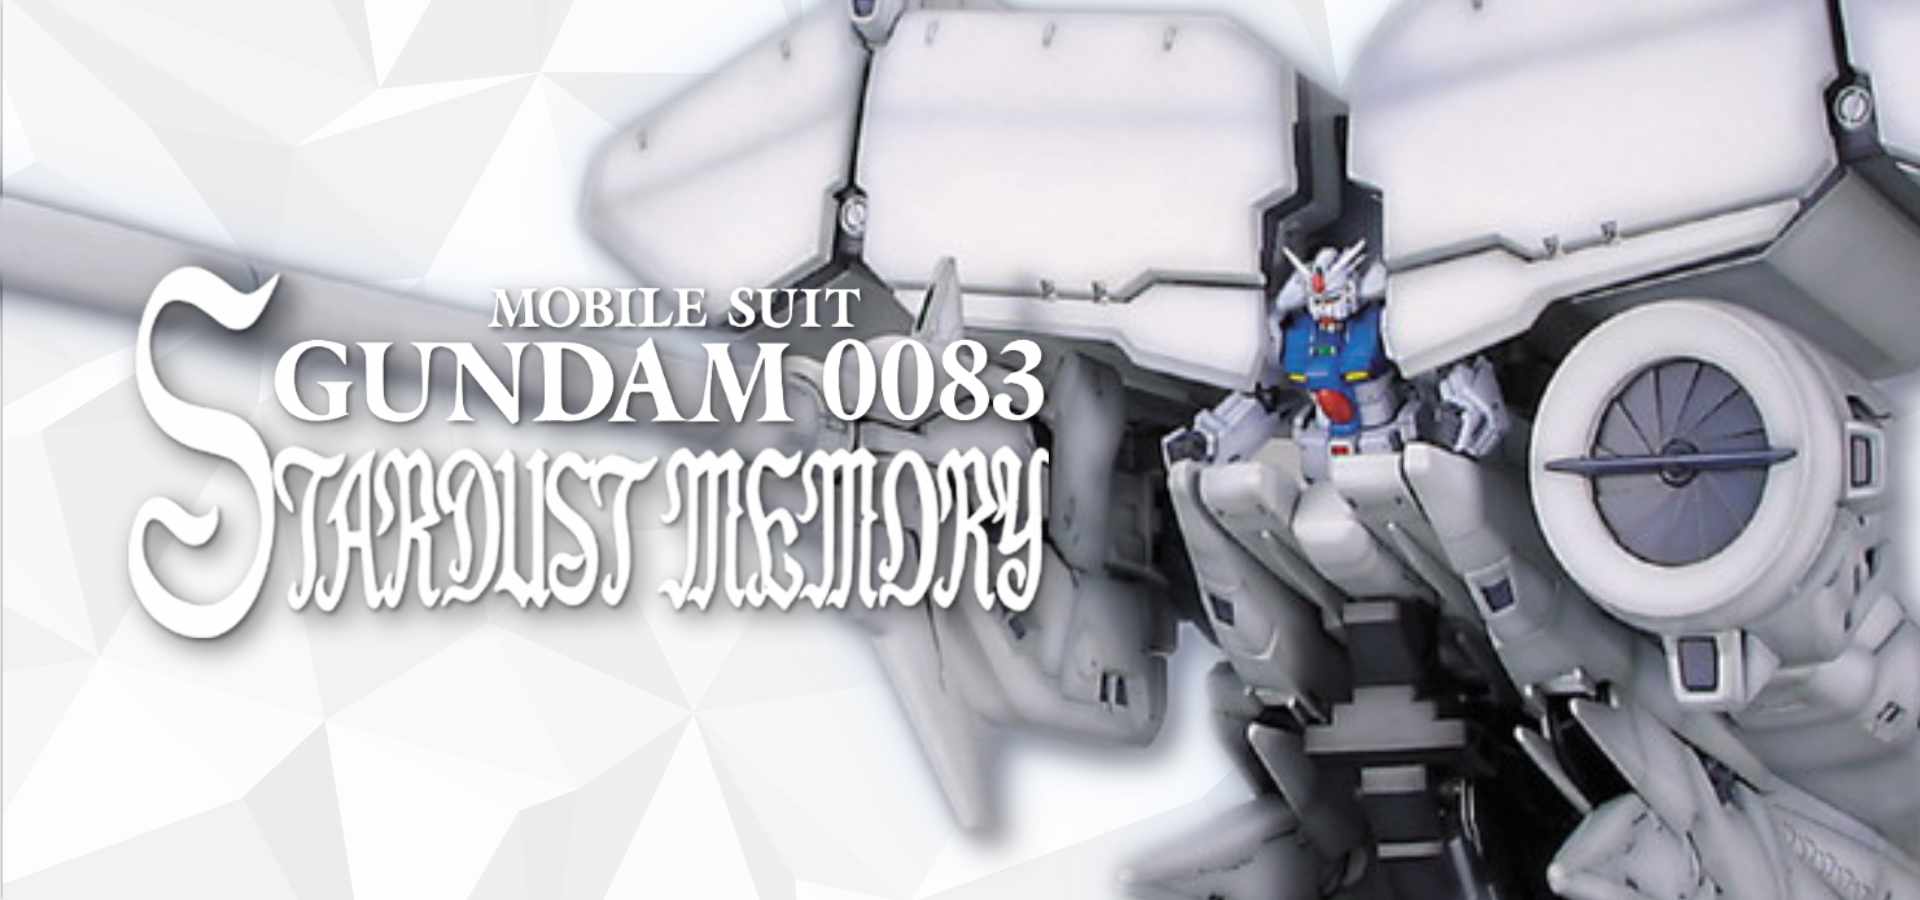 Mobile Suit Gundam 0083 Stardust Memories - Gunpla Model Kit Bandai | Glacier Hobbies